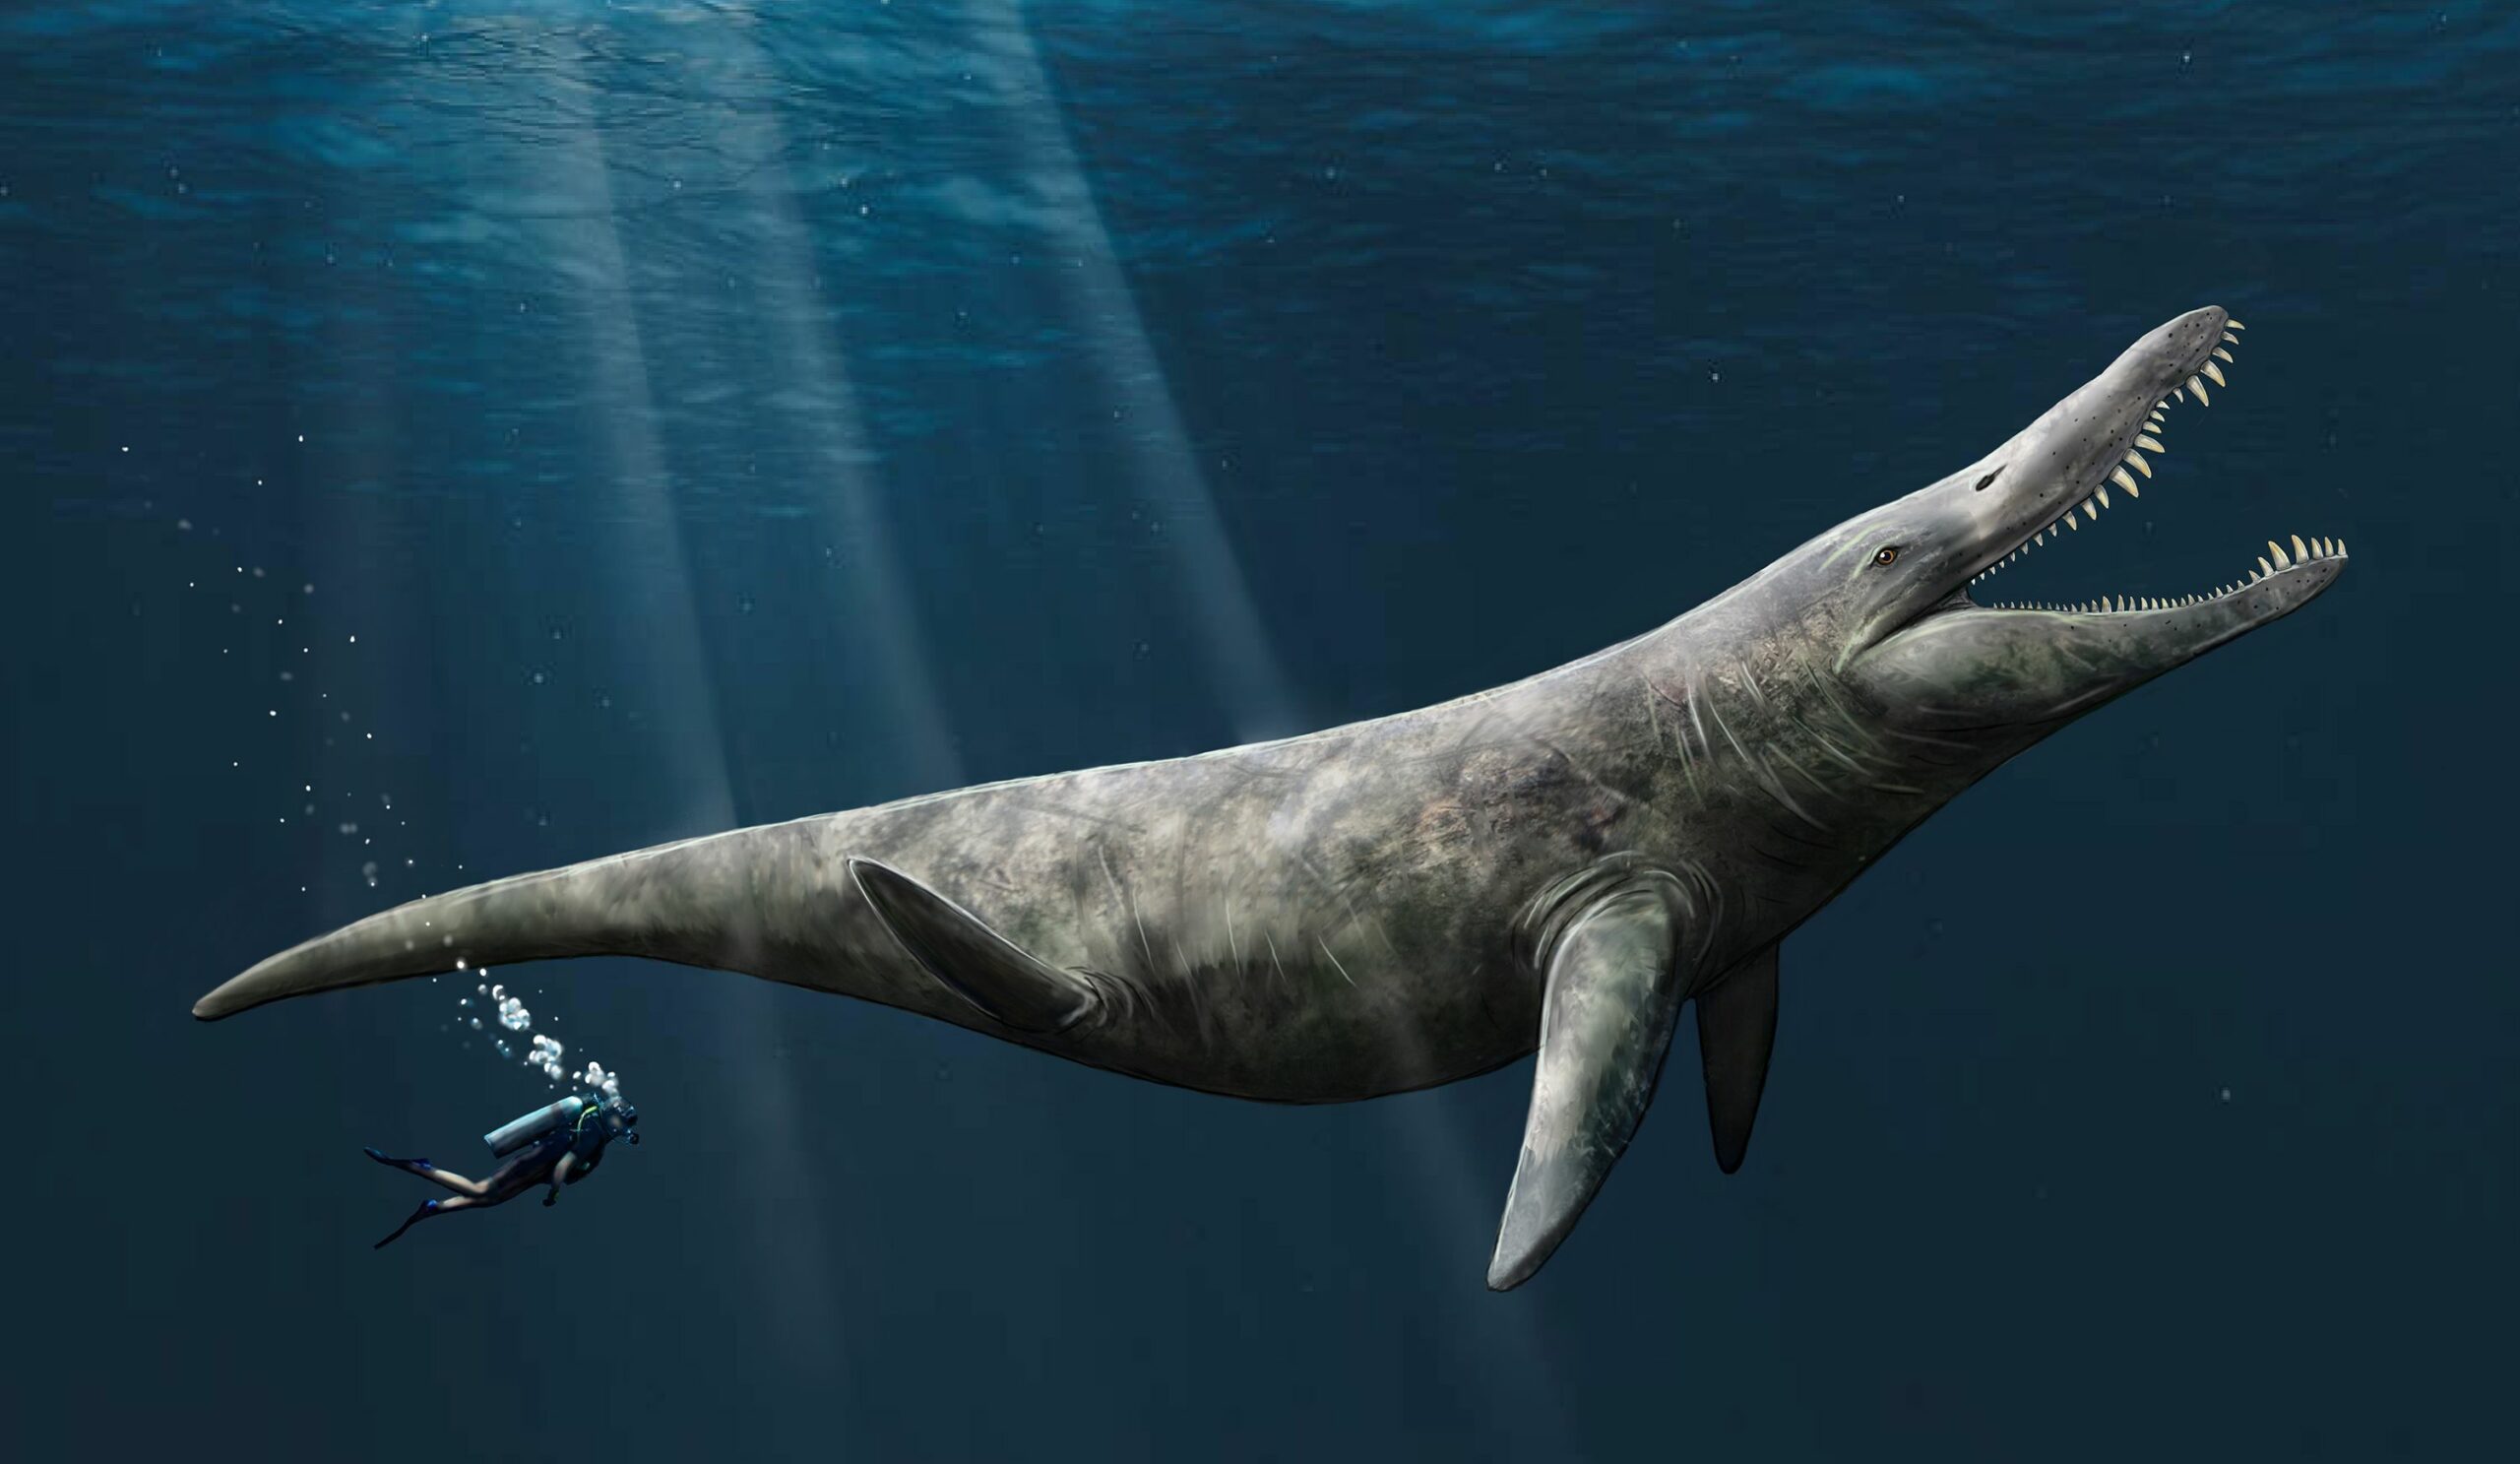 Egy művész benyomása a plioszauruszról. A Portsmouth Egyetem paleontológusai bizonyítékokat fedeztek fel, amelyek arra utalnak, hogy a Liopleuronnal szoros rokonságban álló plioszauruszok akár 14.4 méter hosszúságot is elérhettek, ami kétszer akkora, mint egy kardszárnyú bálna.